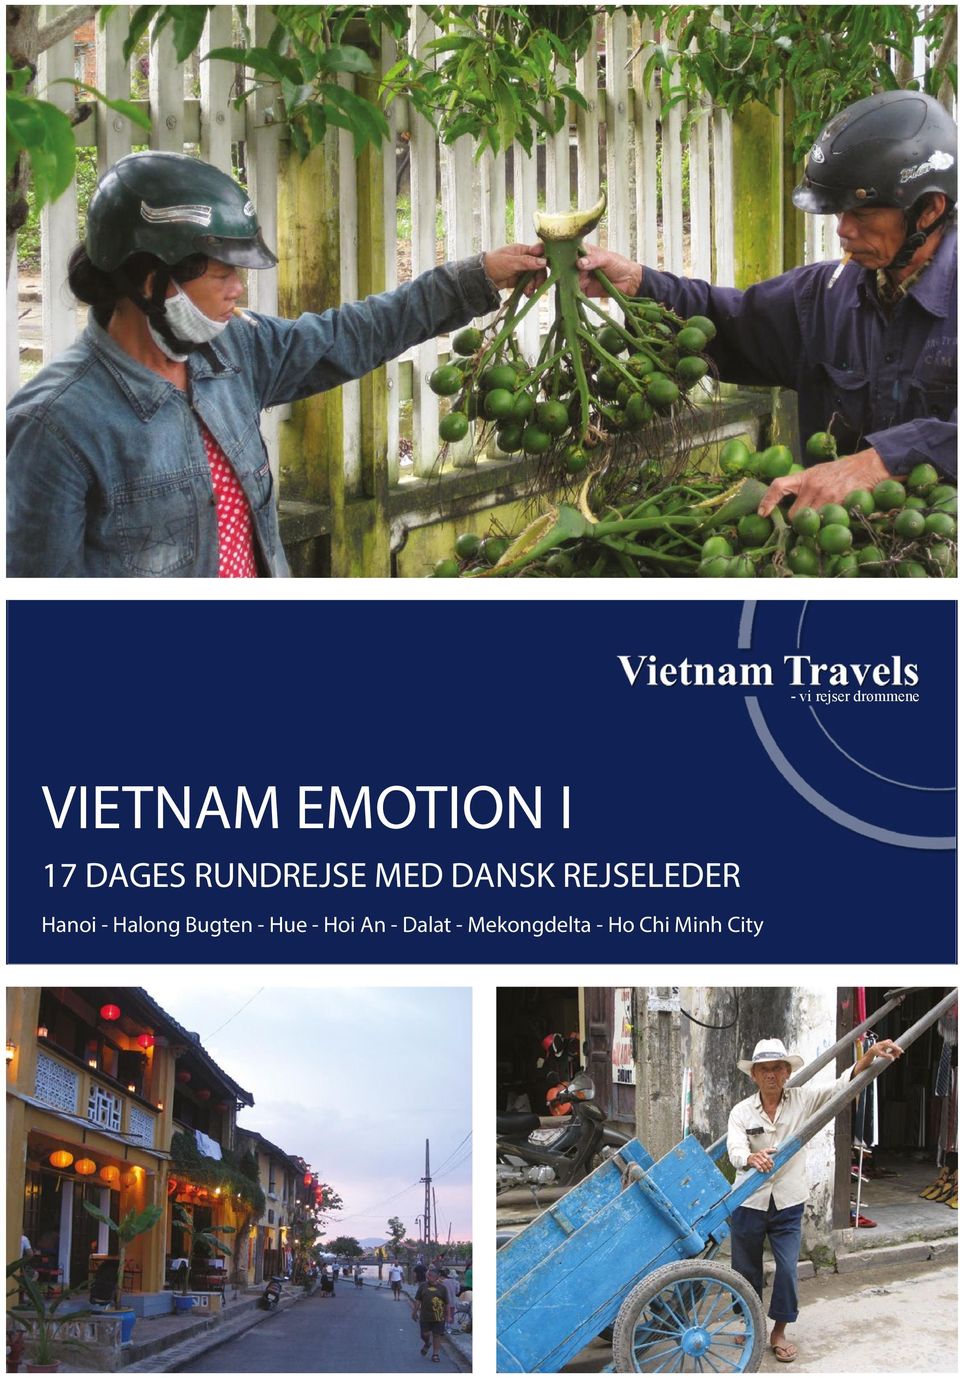 REJSELEDER Hanoi - Halong Bugten - Hue